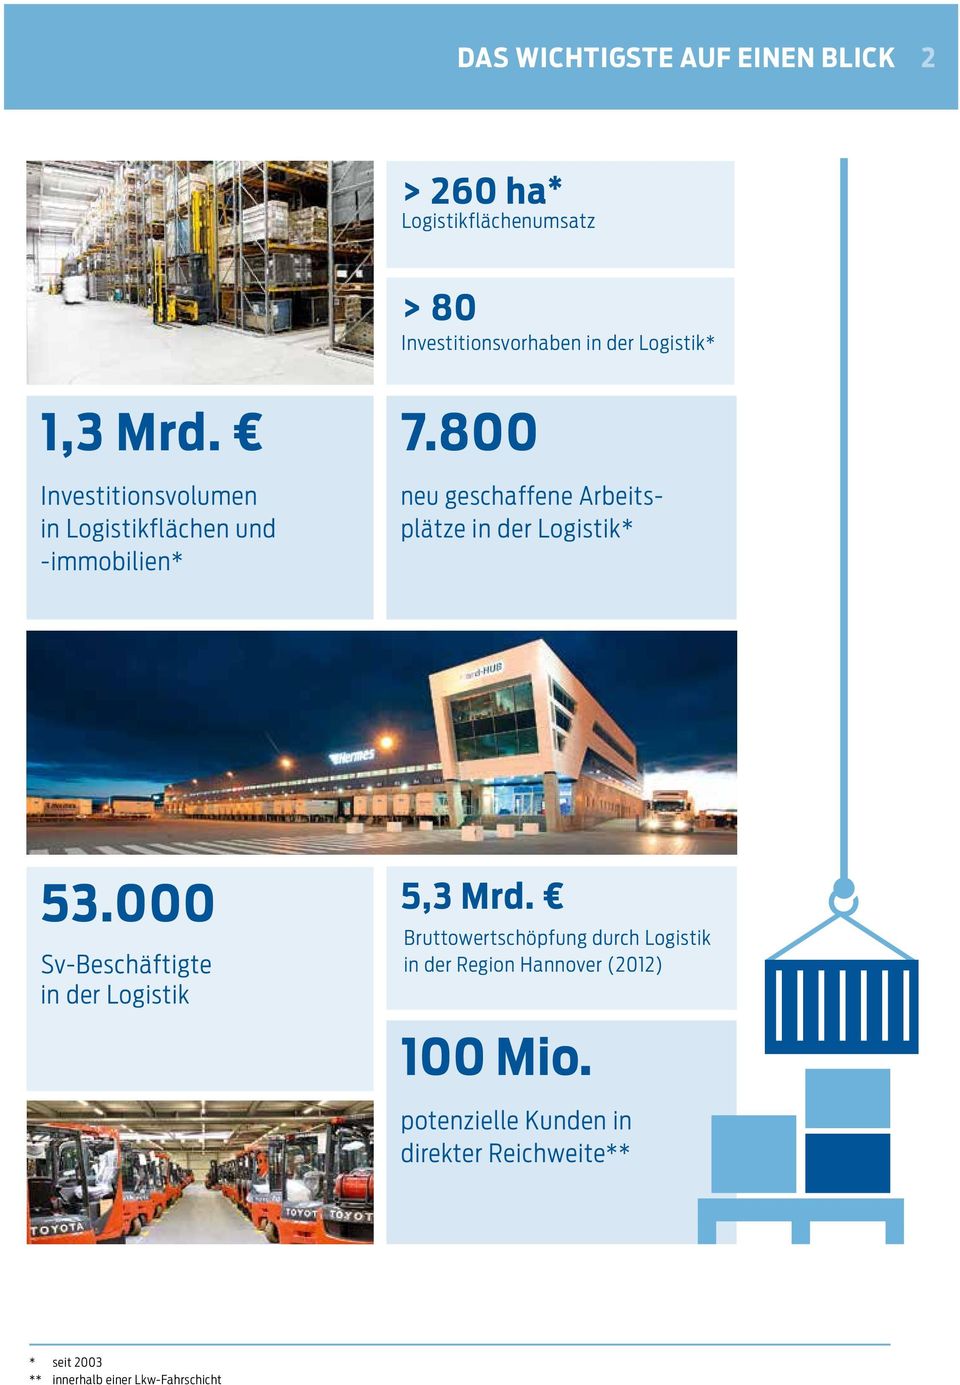 800 neu geschaffene Arbeitsp l ä t z e in der Logistik* 53.000 Sv-Beschäftigte in der Logistik 5,3 Mrd.